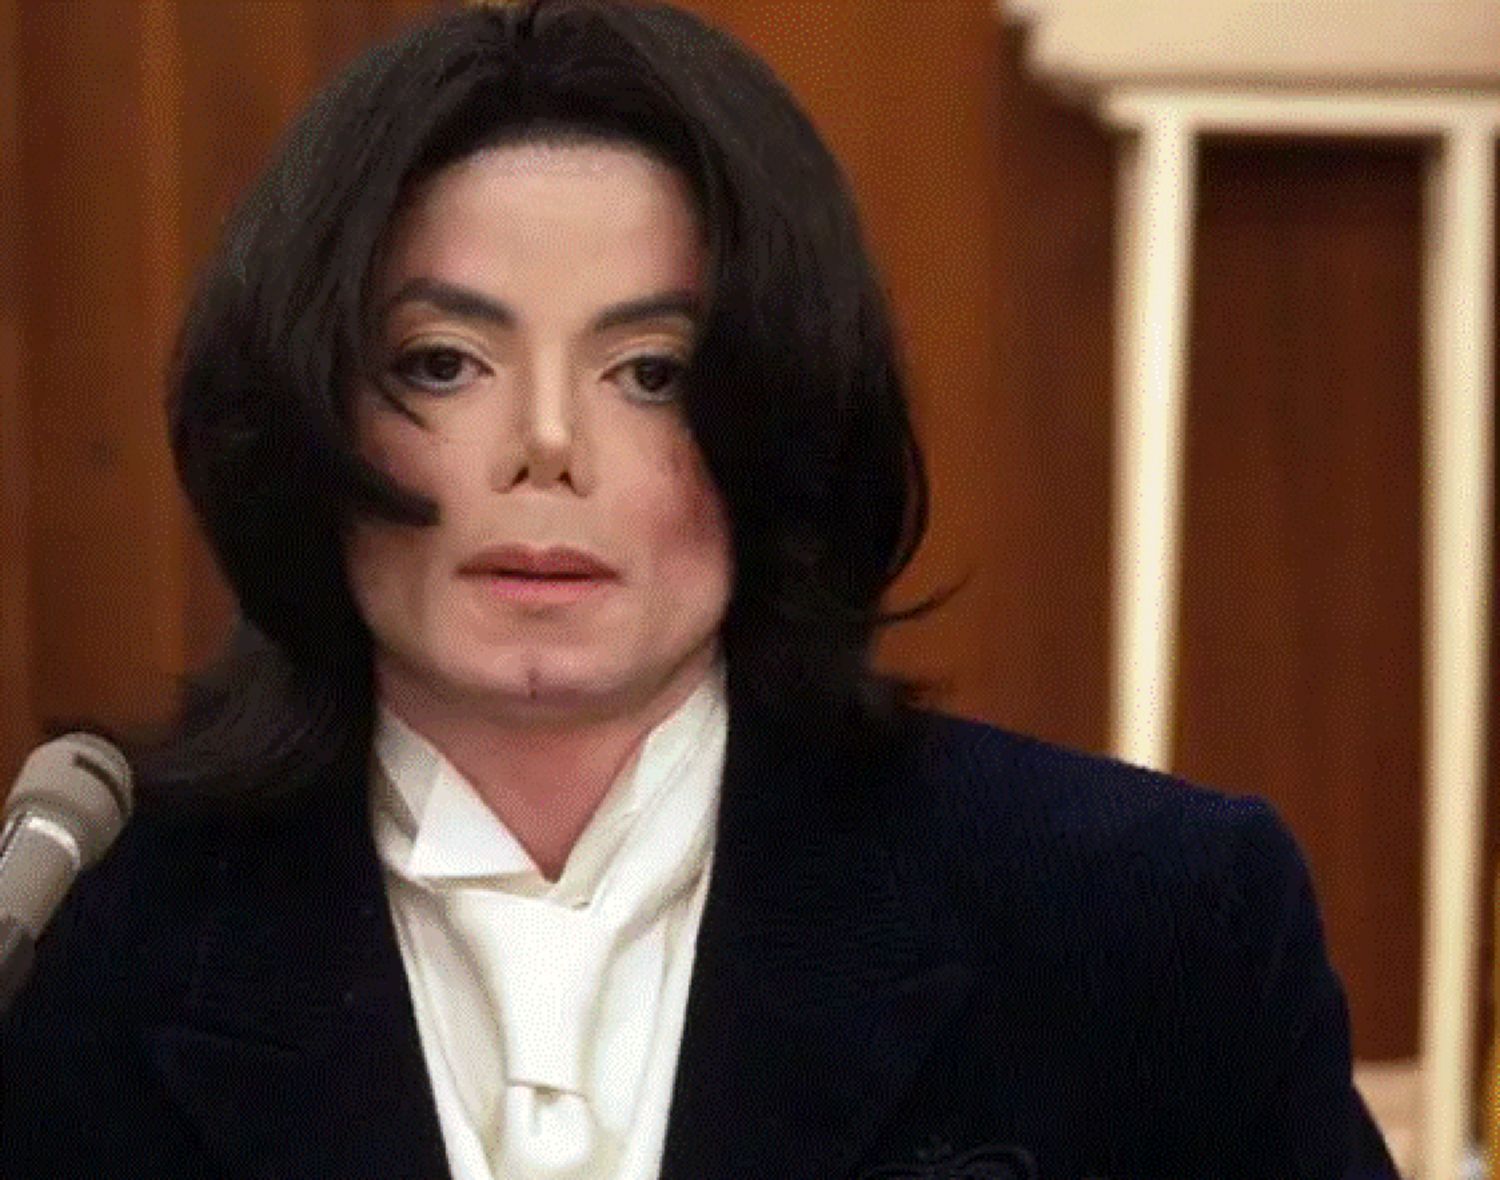 Michael Jackson, imagini de la ultima repetiție. Artistul avea o perucă lipită pe scalpul plin de cicatrici. Foto